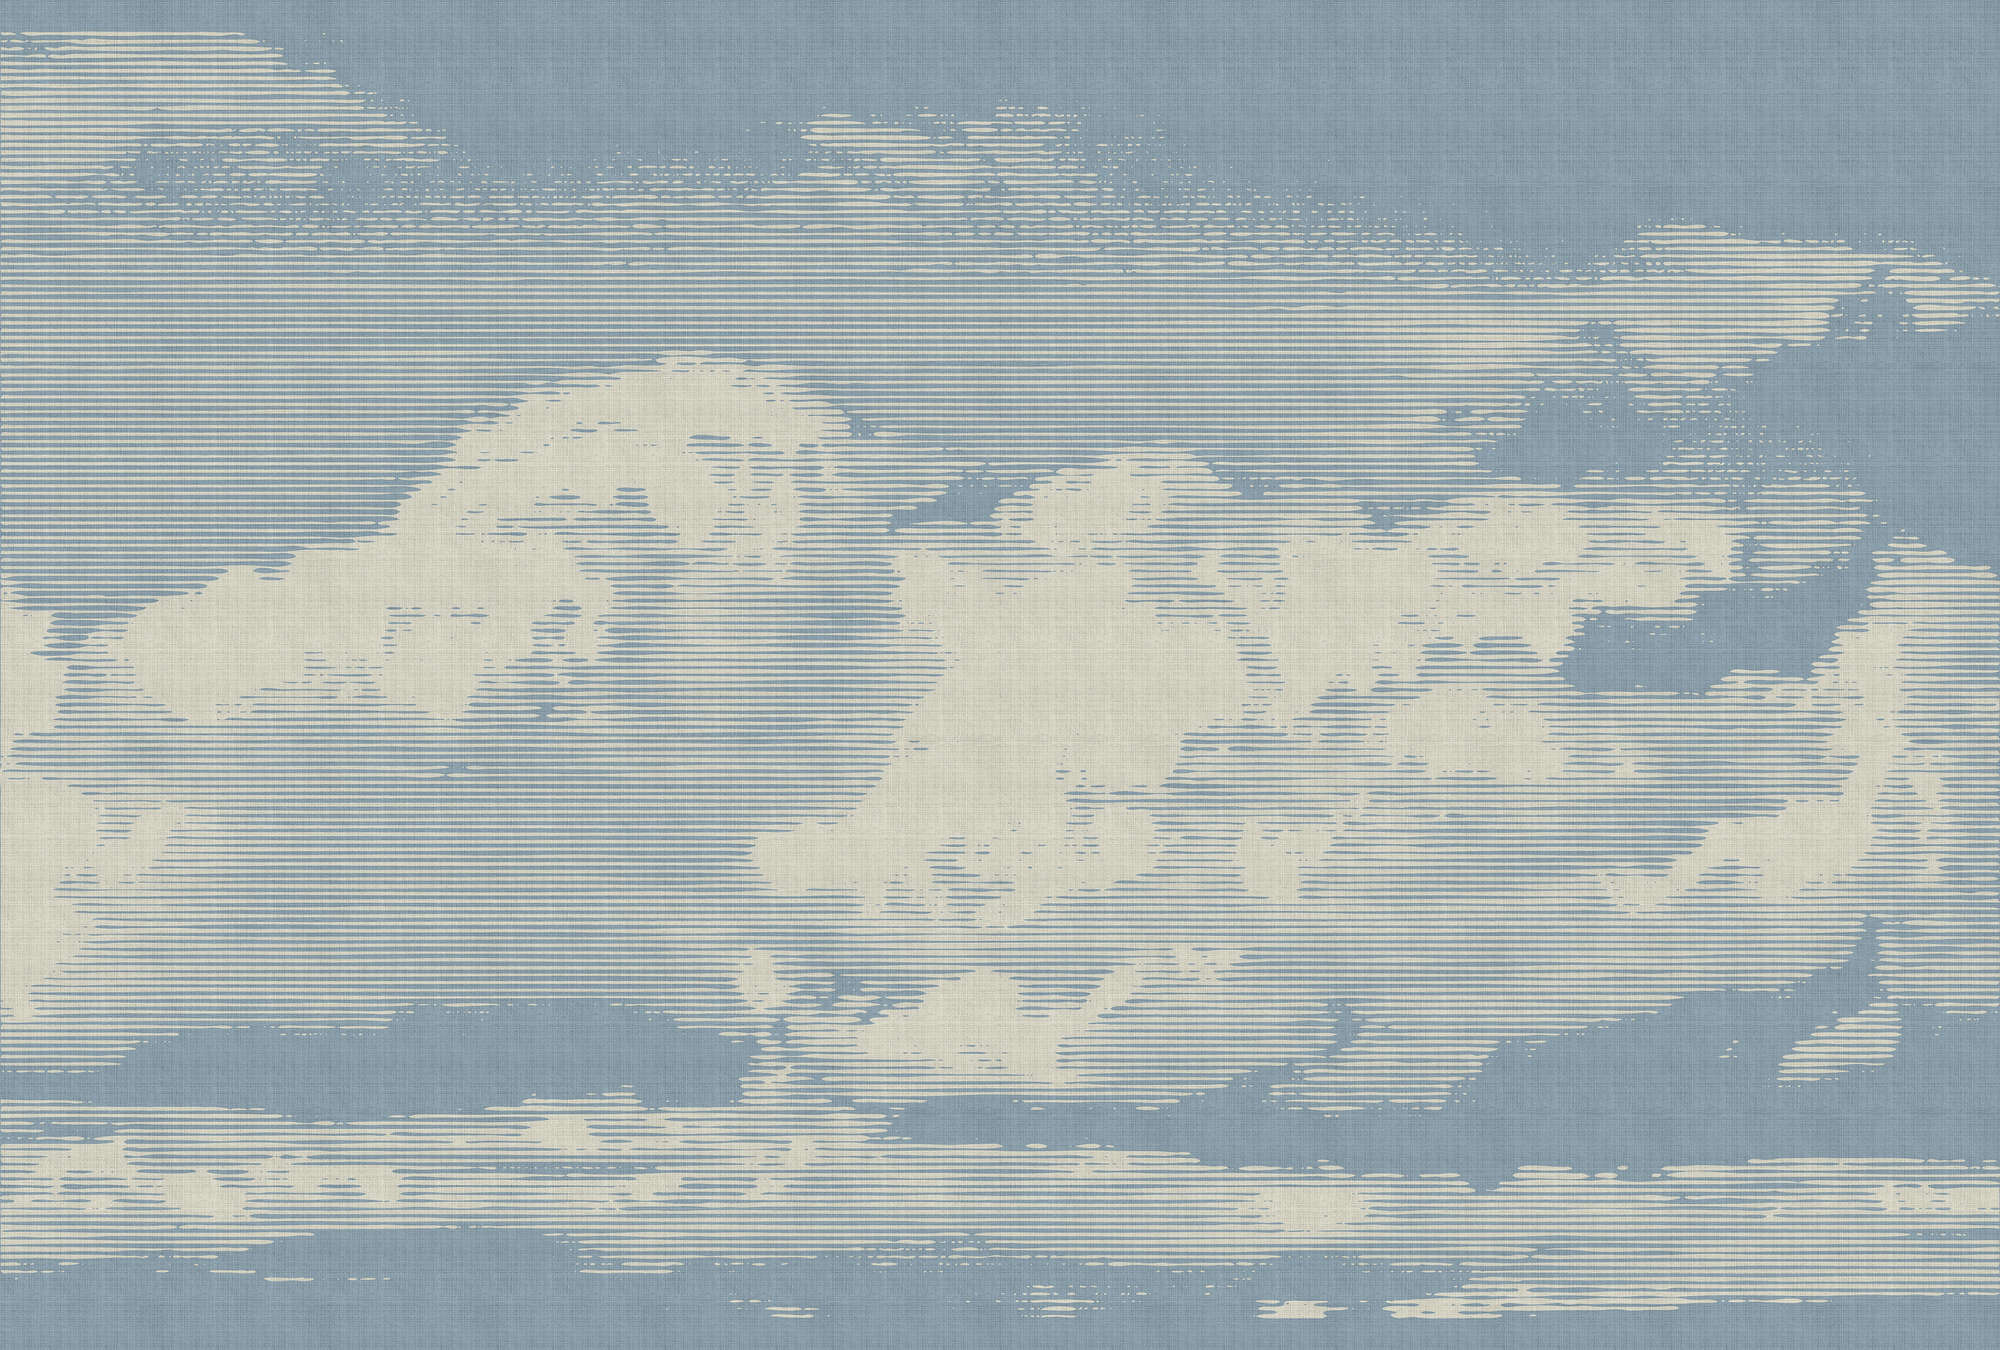             Clouds 1 - Himmlische Fototapete mit Wolkenmotiv in naturleinen Struktur – Beige, Blau | Mattes Glattvlies
        